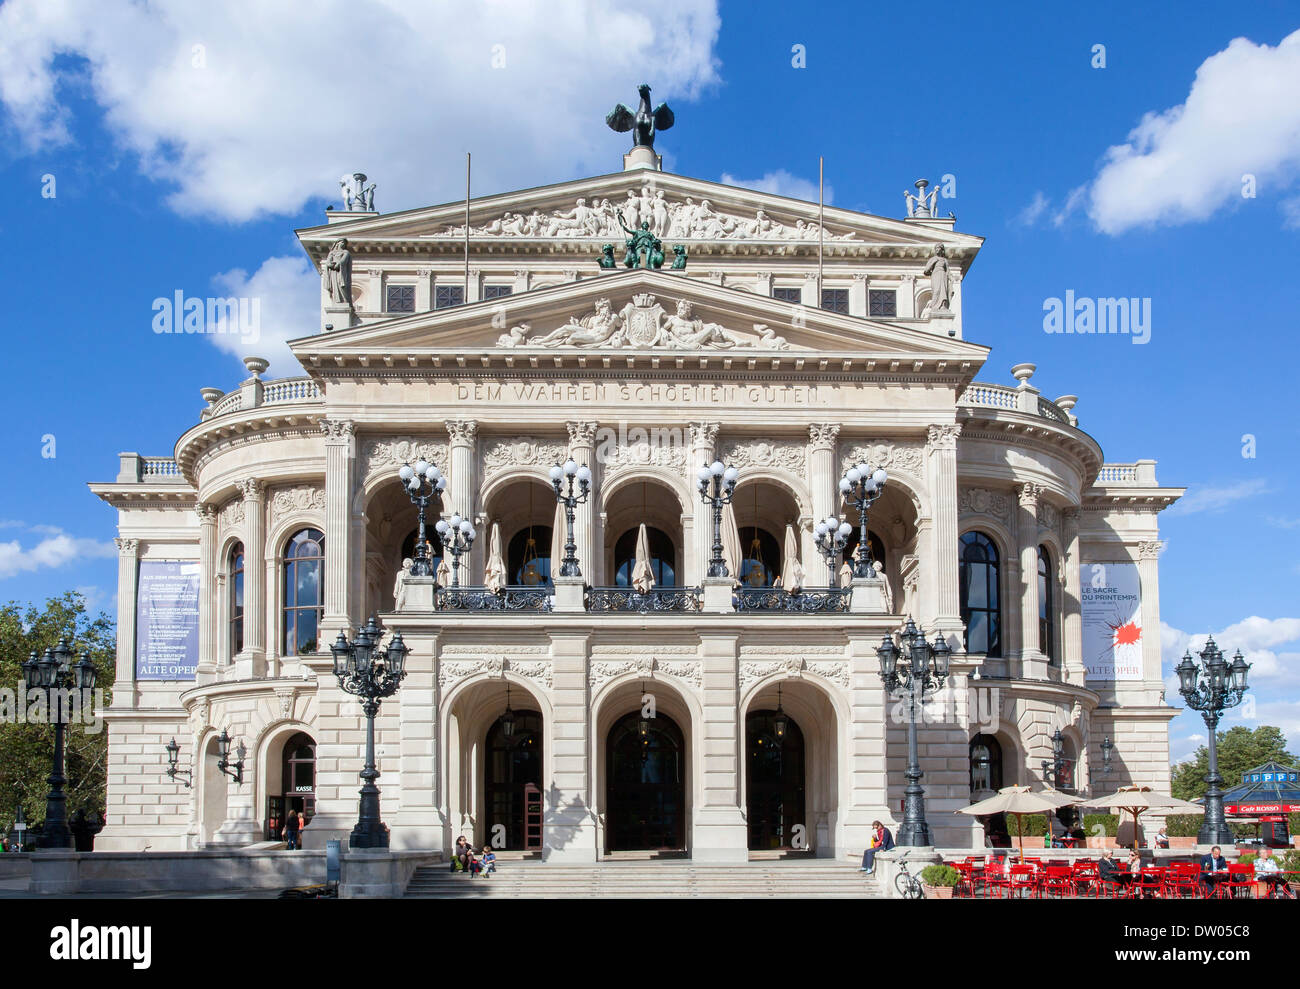 Alte Oper, opéra, Westend, Frankfurt am Main, Hesse, Allemagne Banque D'Images